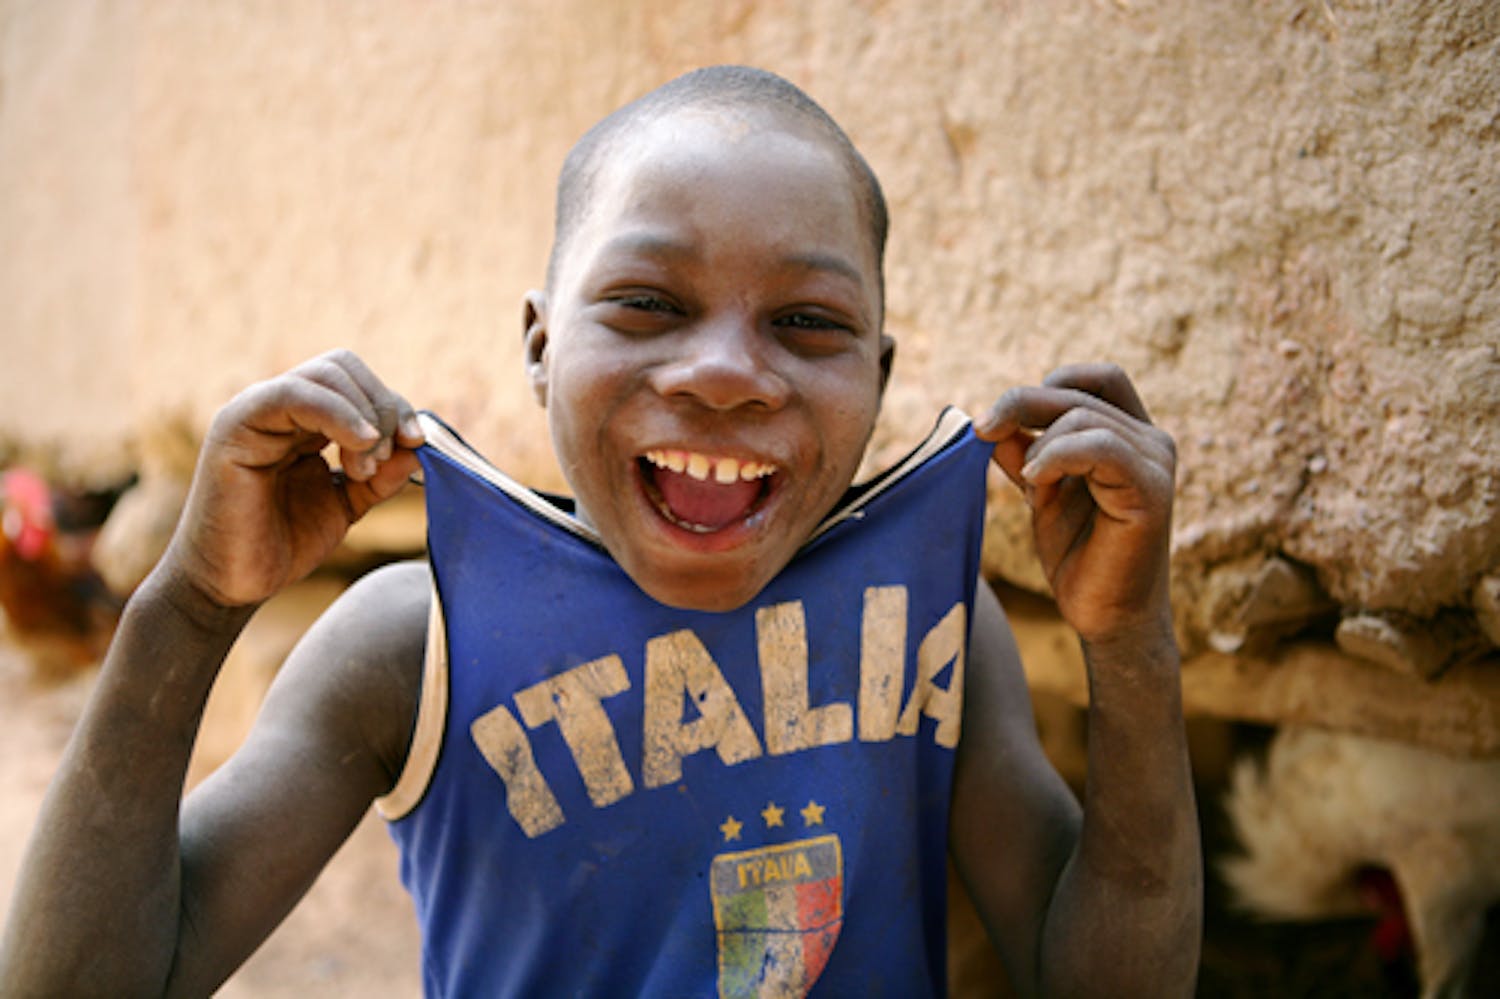 Un bambino in un villaggio nei pressi di Bandiagara (Mali) esibisce la maglietta della Nazionale italiana campione del mondo - ©UNICEF/HQ09-1918/G.Pirozzi